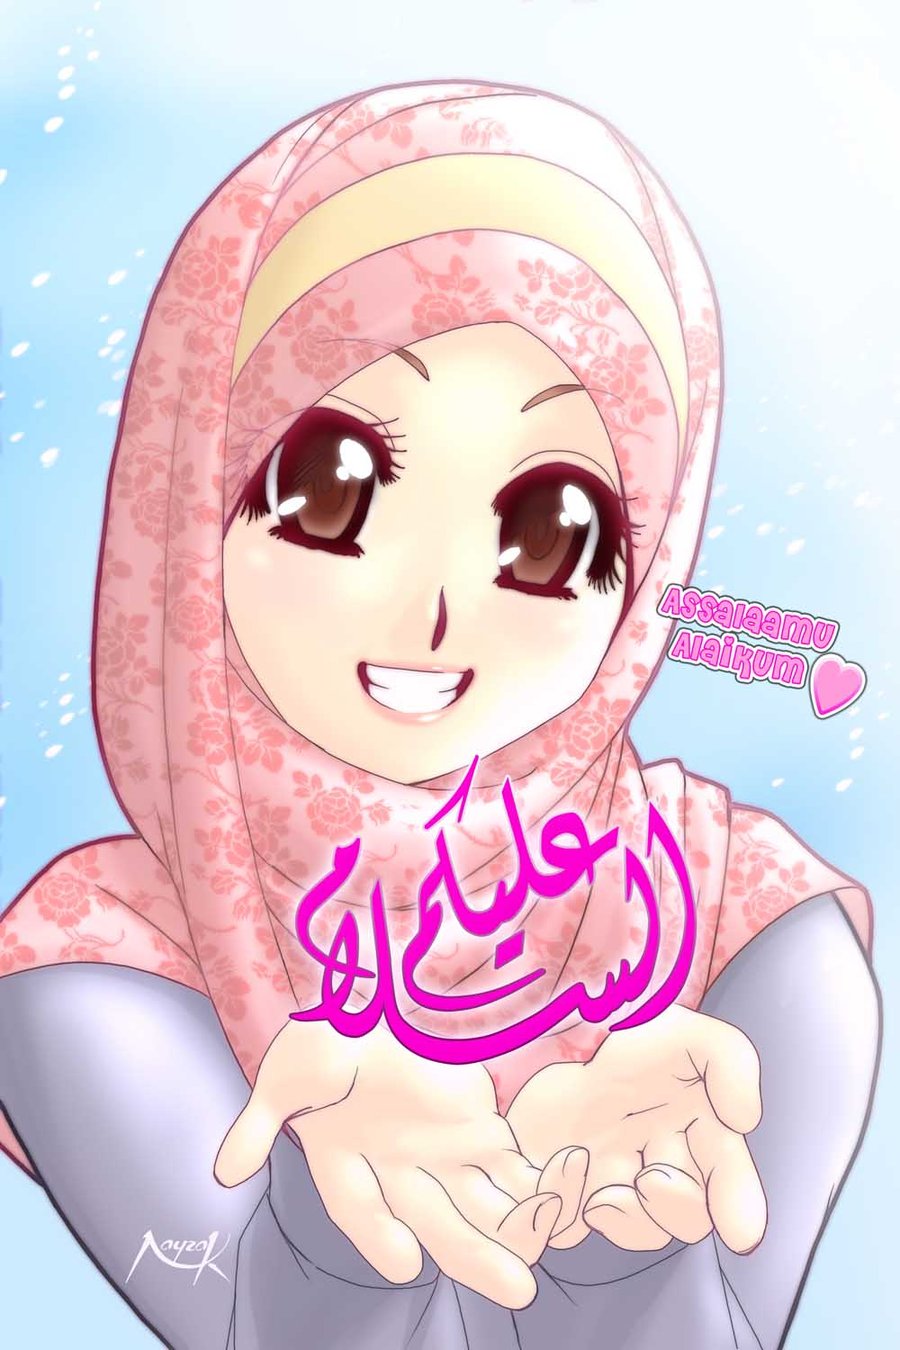 99 Animasi Gambar Animasi Bergerak Animasi Kartun Muslimah Cikimmcom